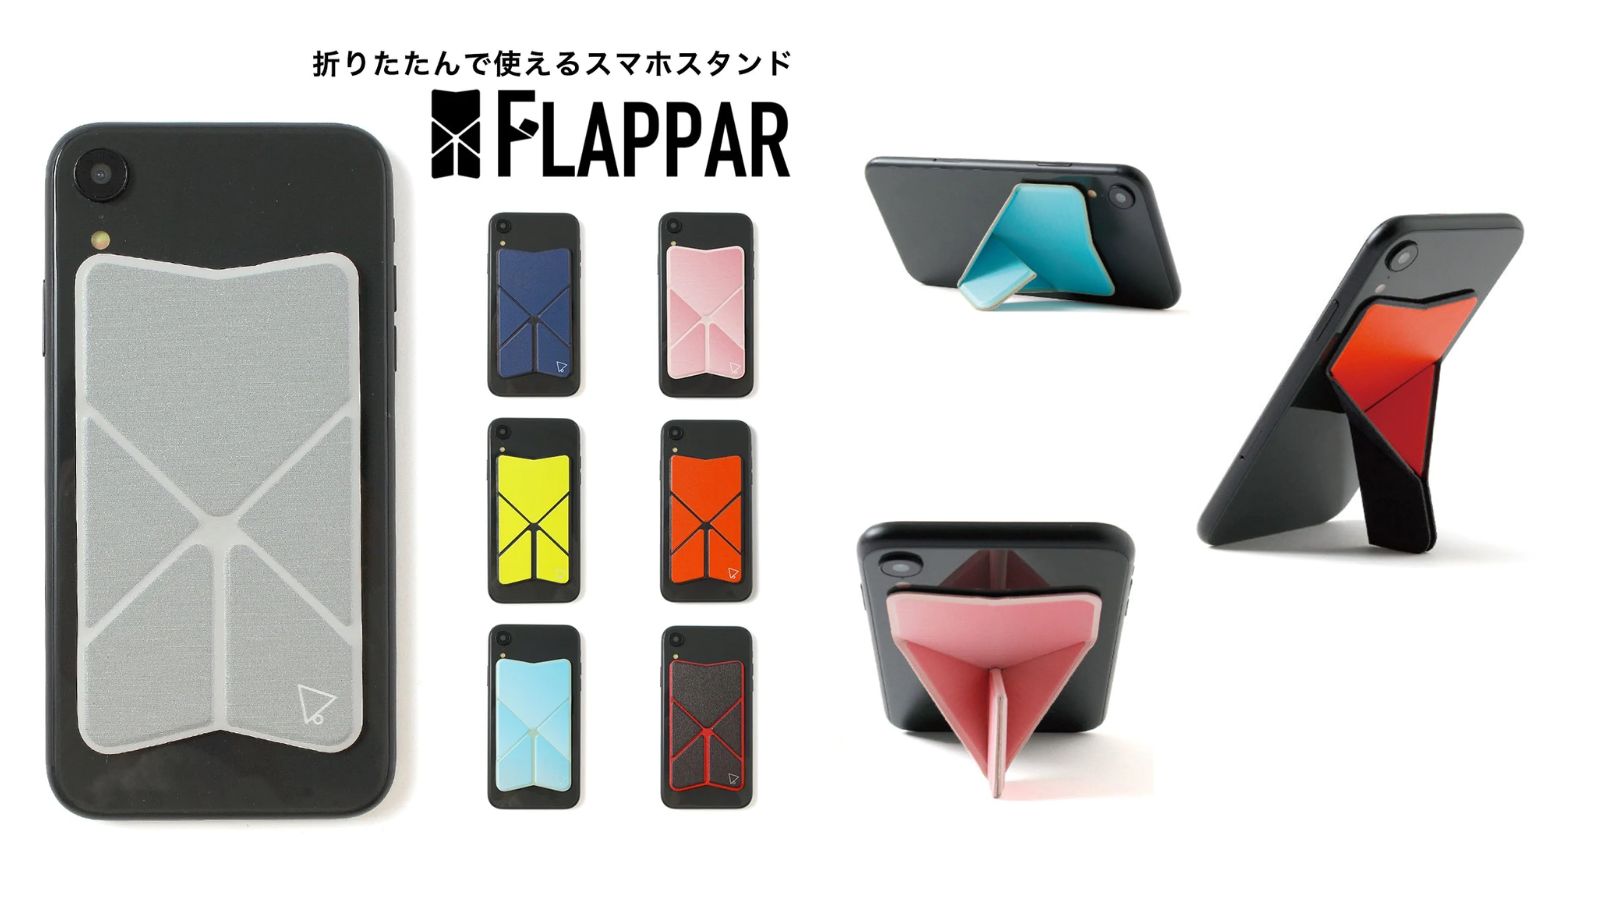 【選べる7色】HOLUDONA 薄いスマホスタンド 折りたたんで使える「FLAPPAR(フラッパー)」